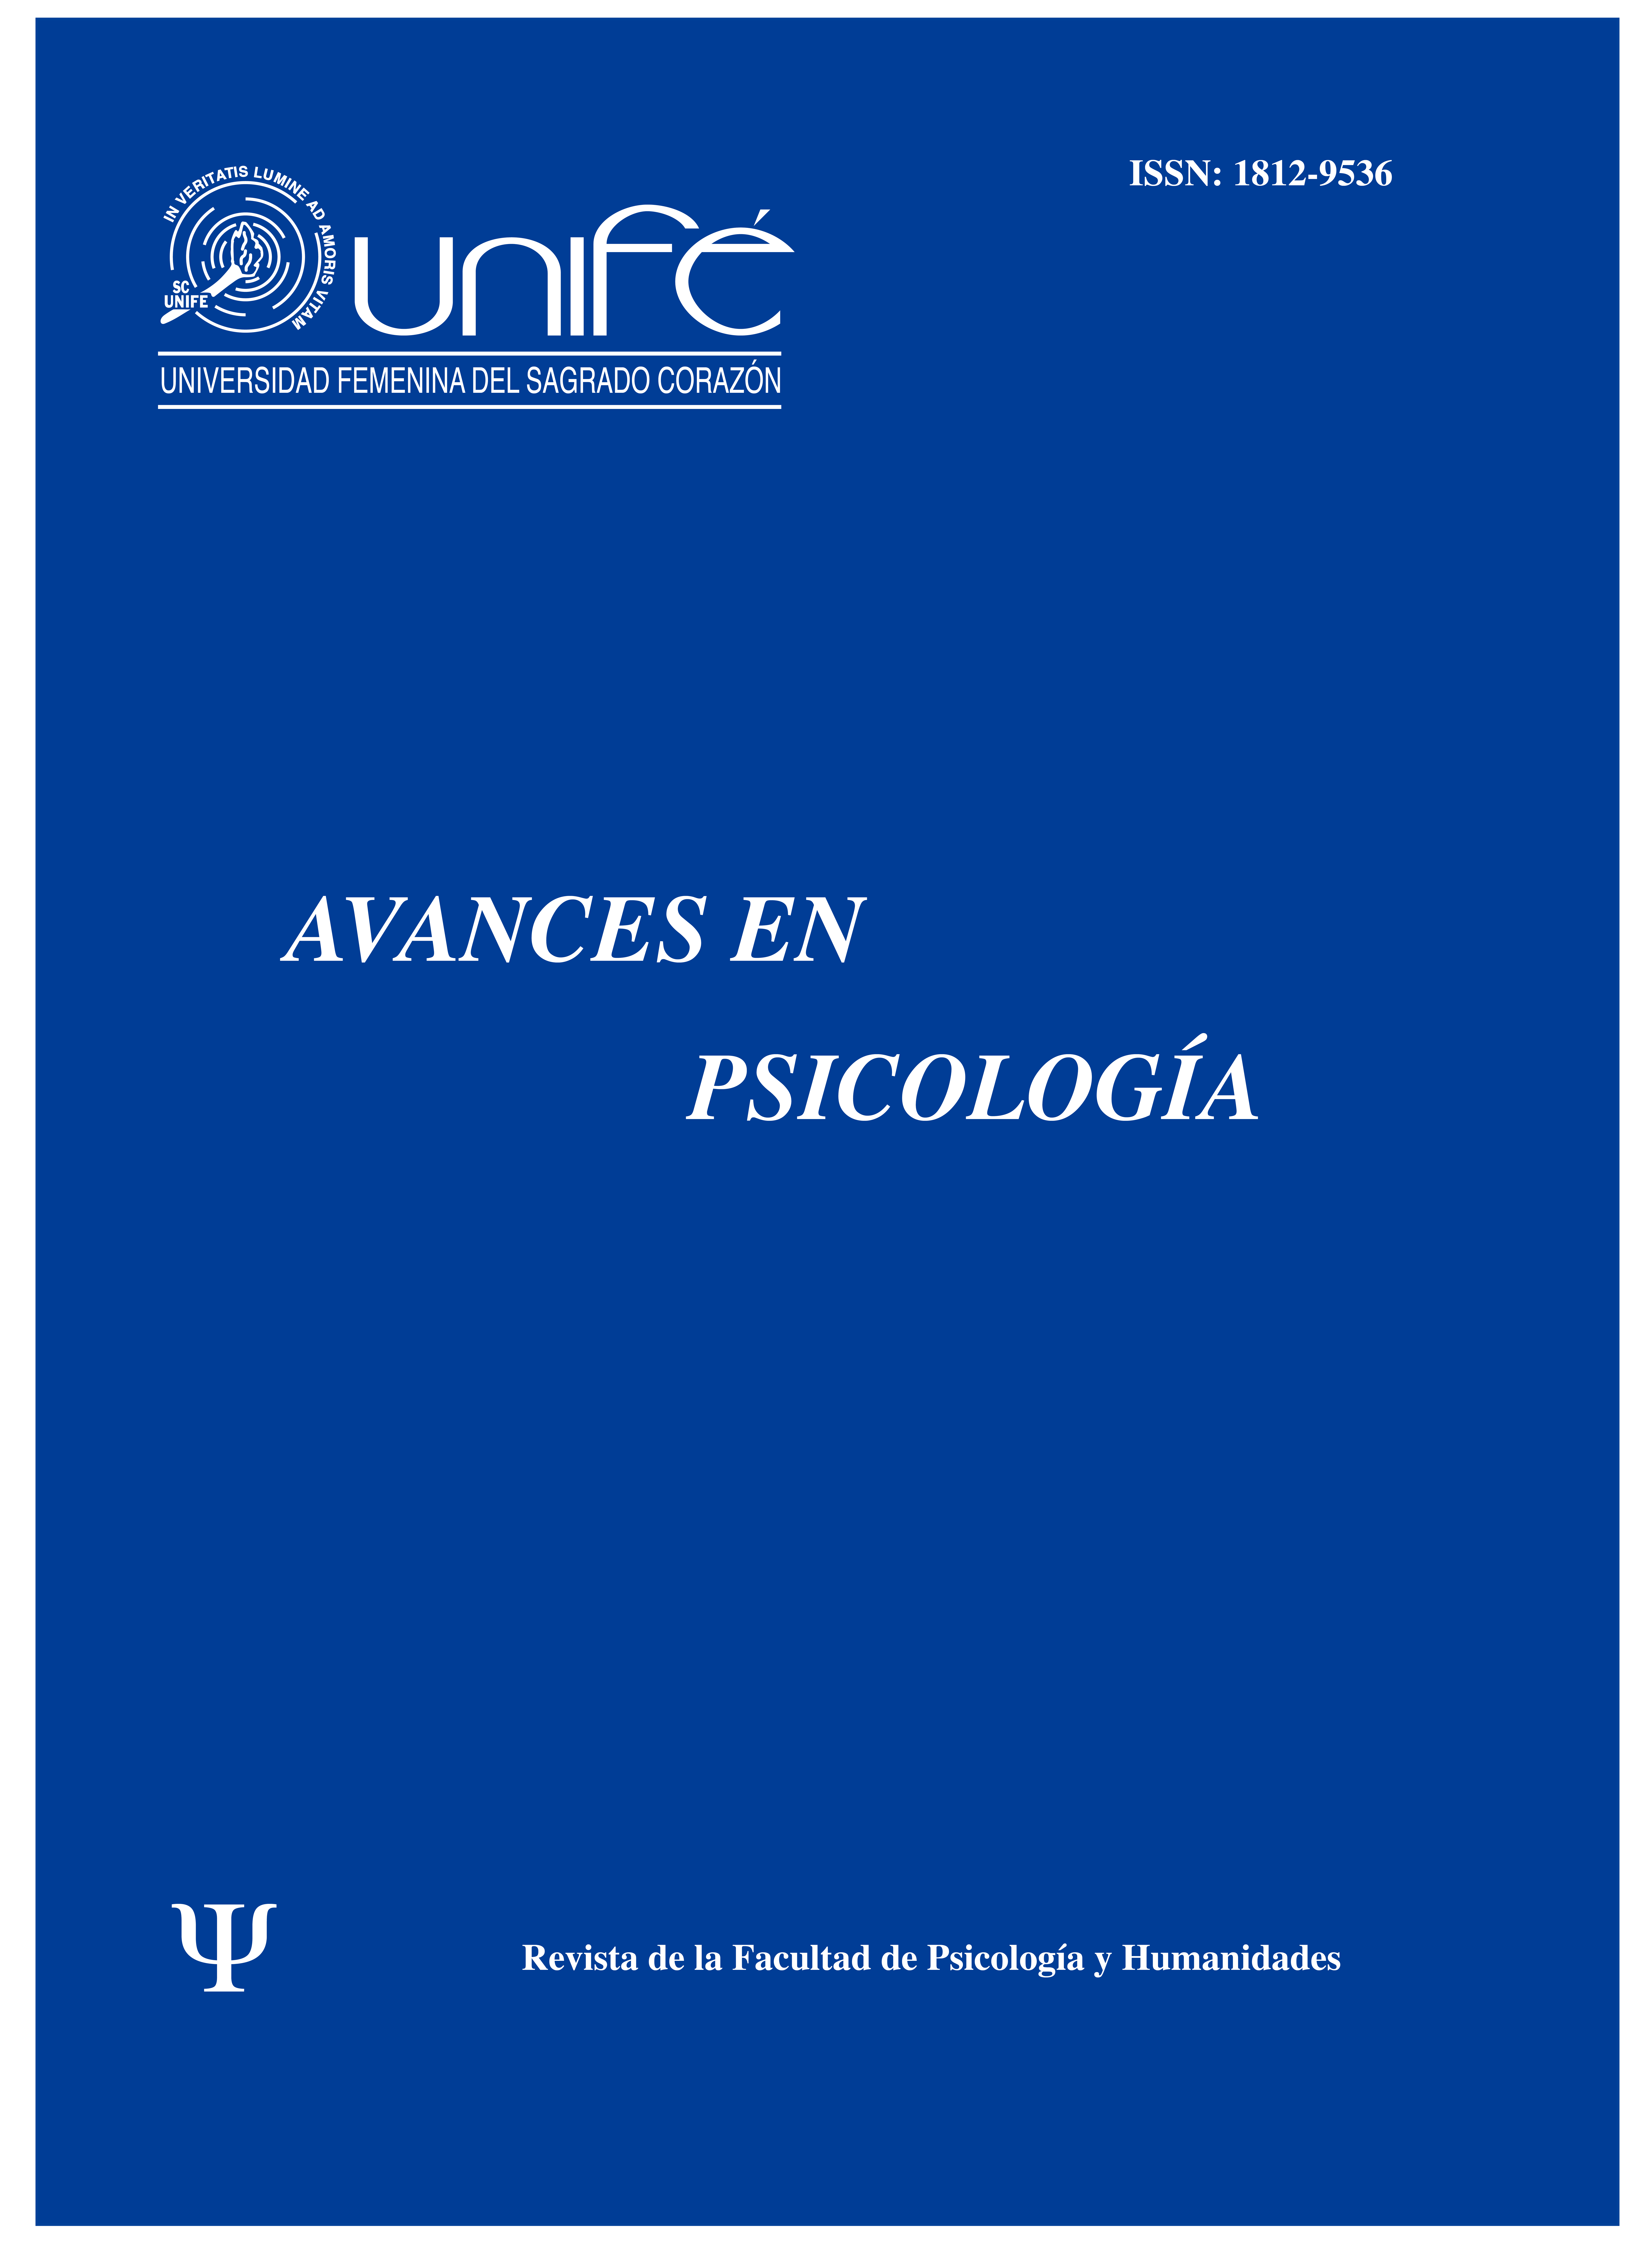 					Ver Vol. 13 Núm. 1 (2005): Avances en Psicología: Revista de la Facultad de Psicología y Humanidades
				